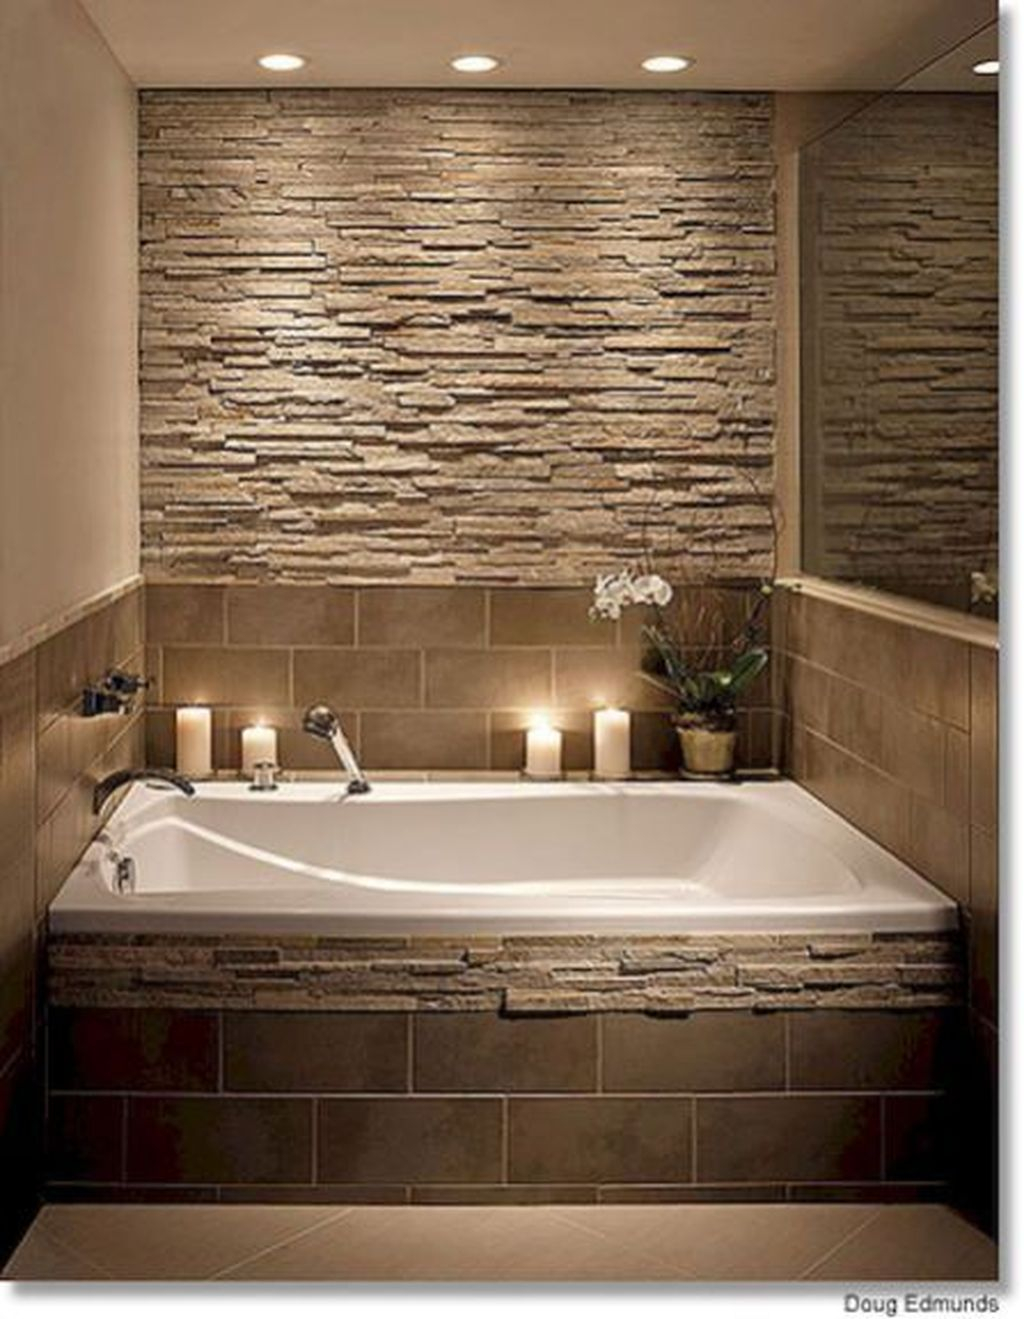 Красивая плитка на стены. Отделка ванной камнем. Декоративный камень в ванной. Ванная отделка камнем. Ванная отделанная плиткой.